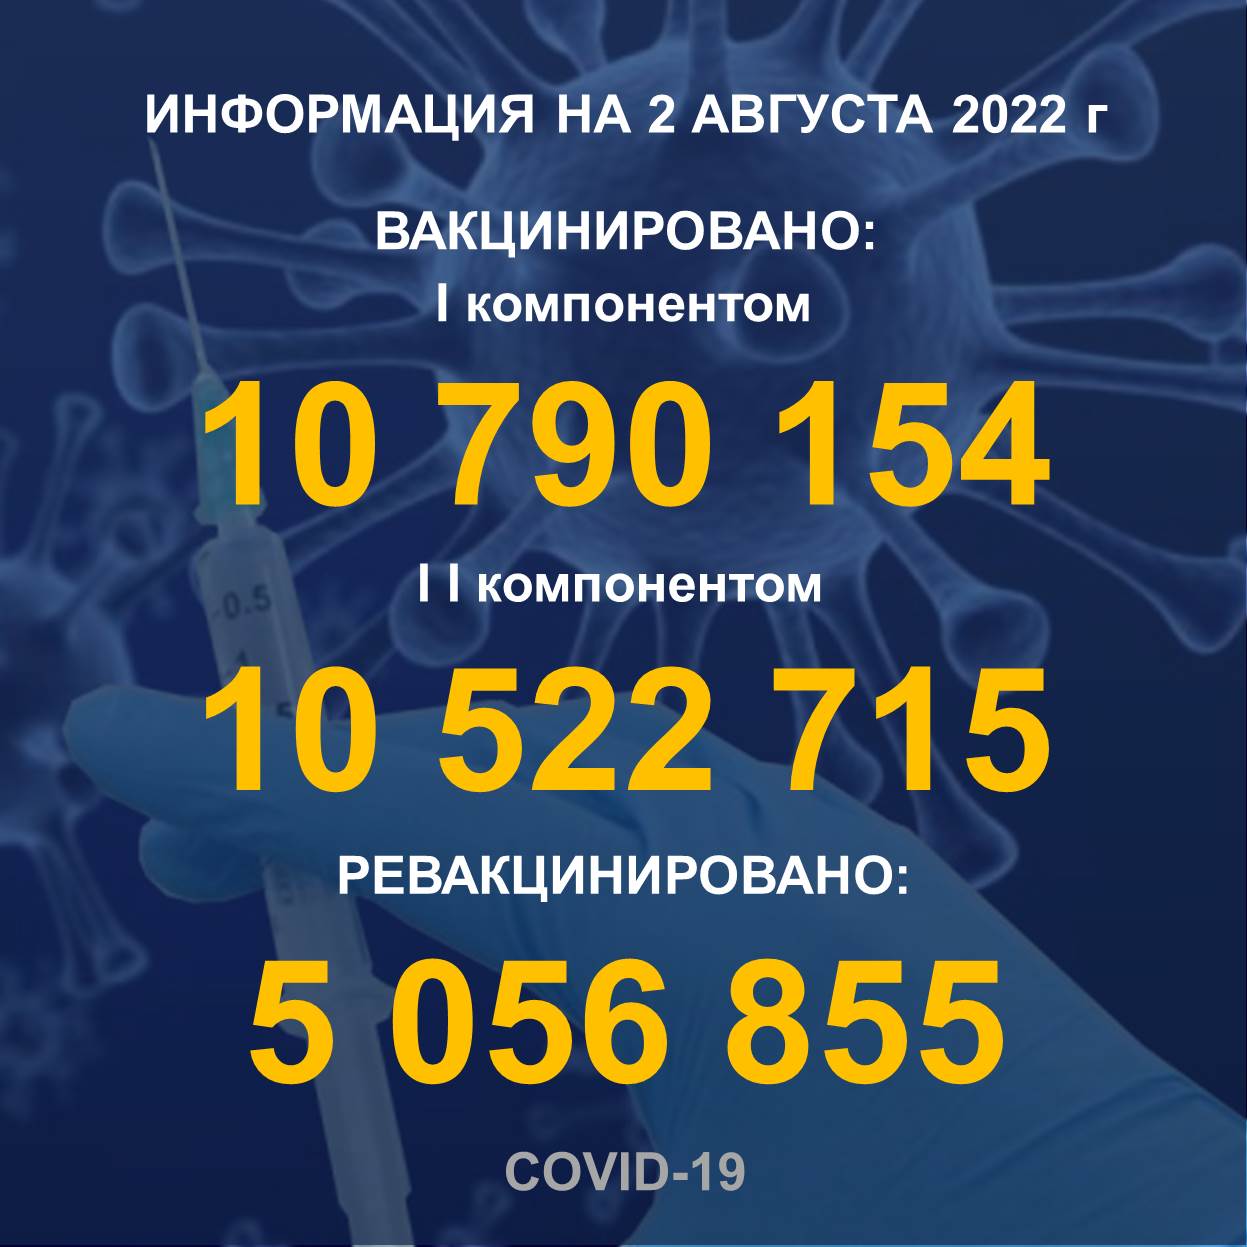 I компонентом 10 790 154 человек провакцинировано в Казахстане на 2.08.2022 г, II компонентом 10 522 715 человек. Ревакцинировано – 5 056 855